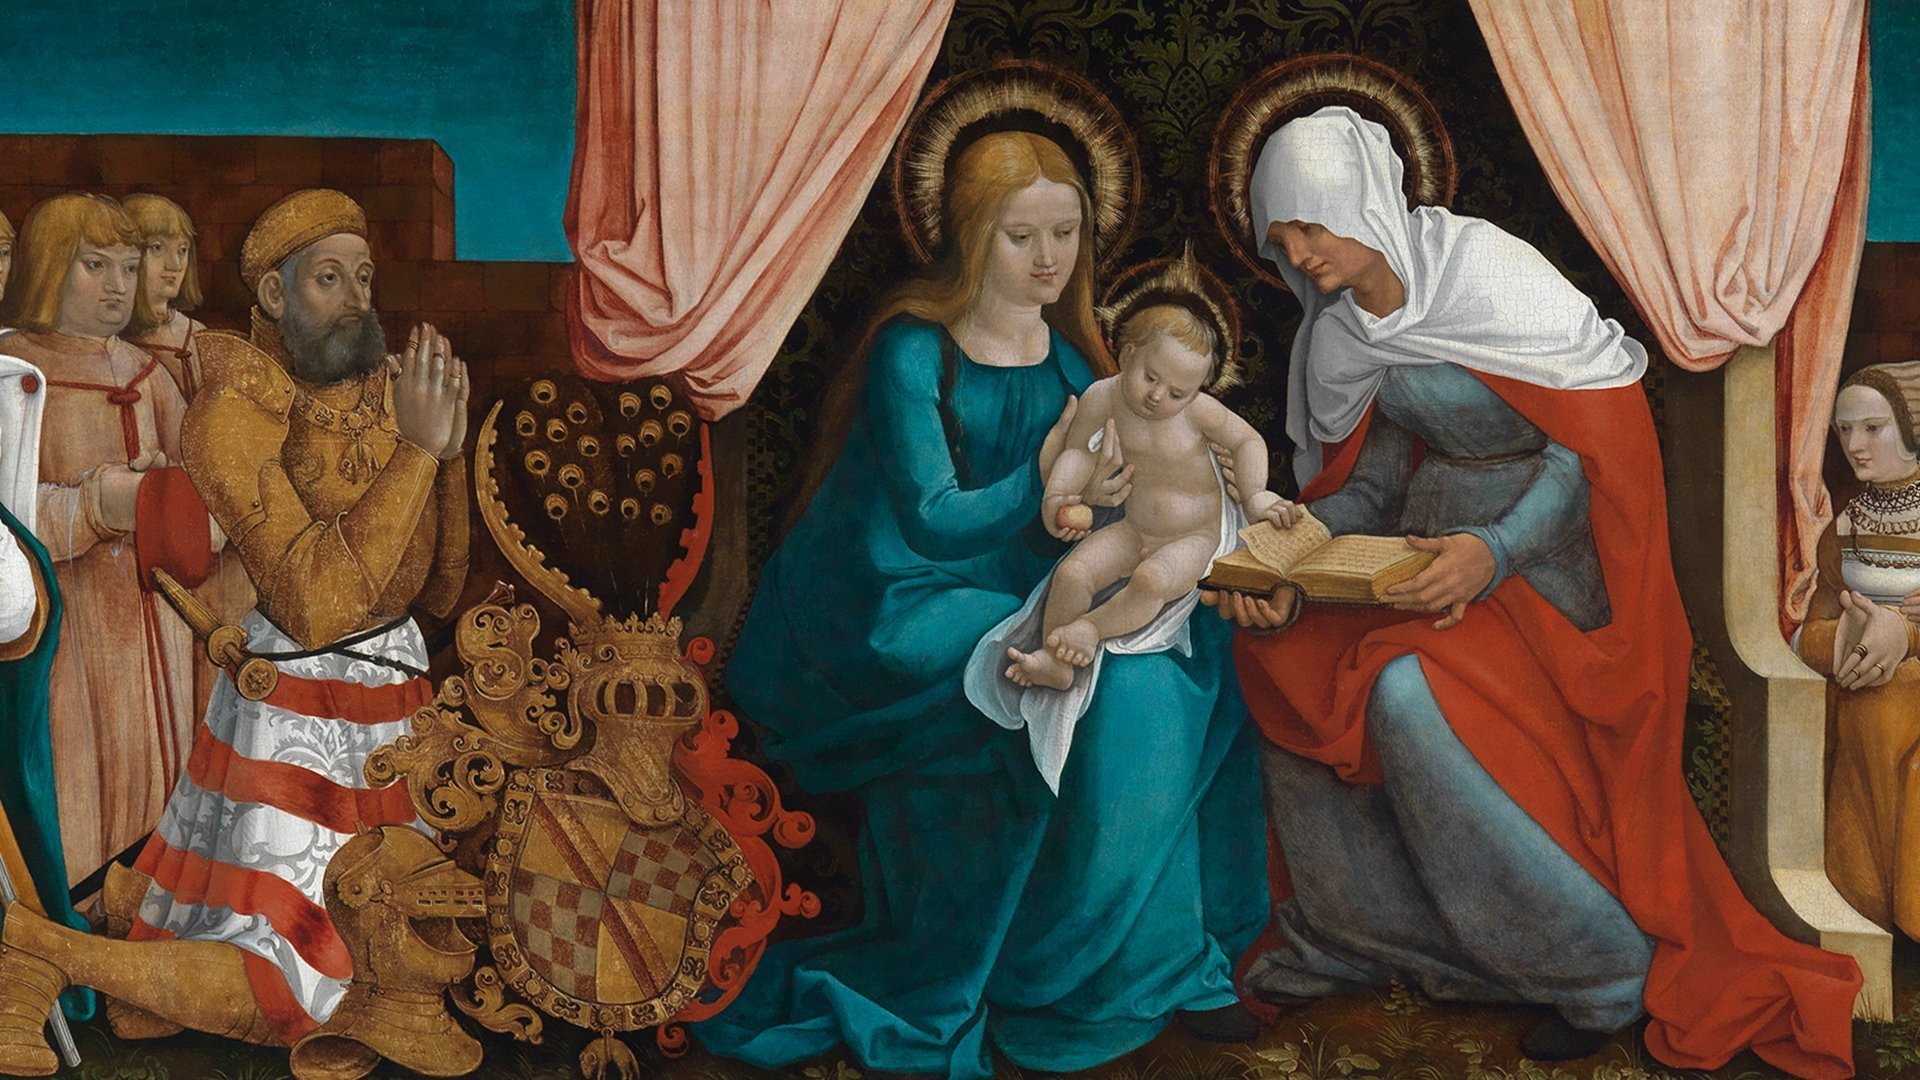 Abbildung eines Details von Hans Baldung Griens Markgrafentafel. Zu sehen sind zwei Frauen die ein Baby halten.